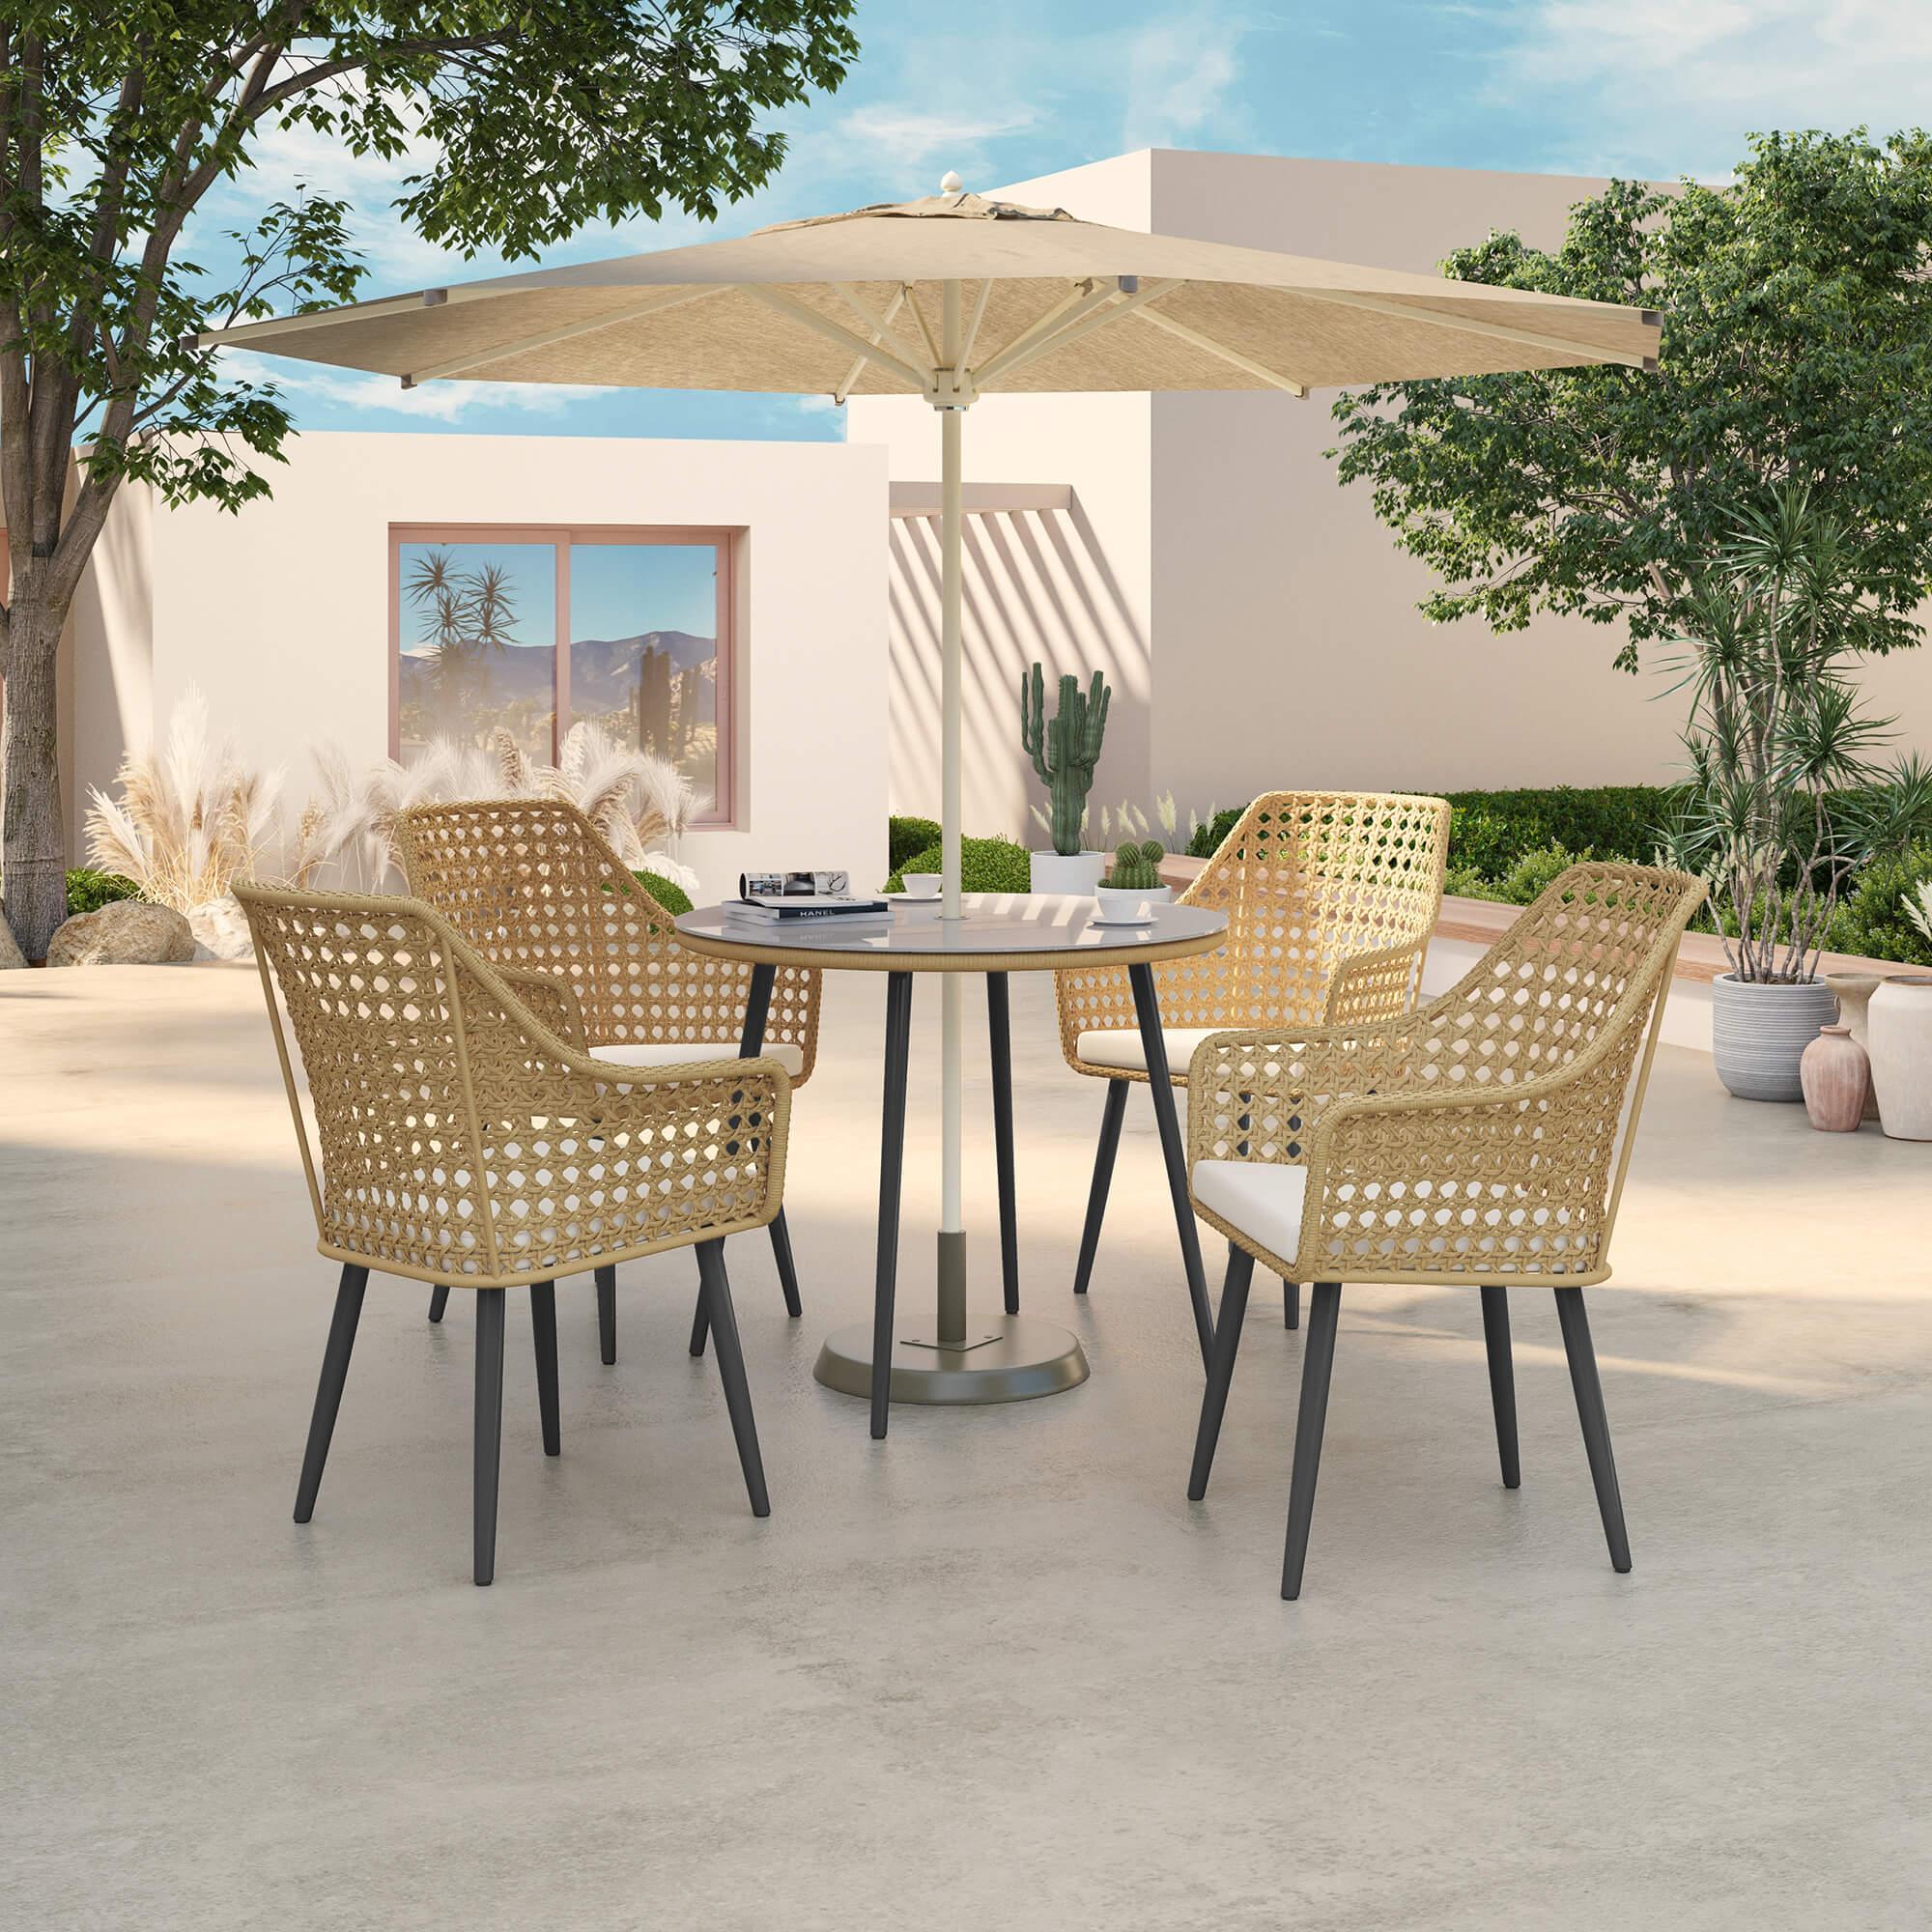 modern round wicker outdoor dining set with umbrella, under the sunshine